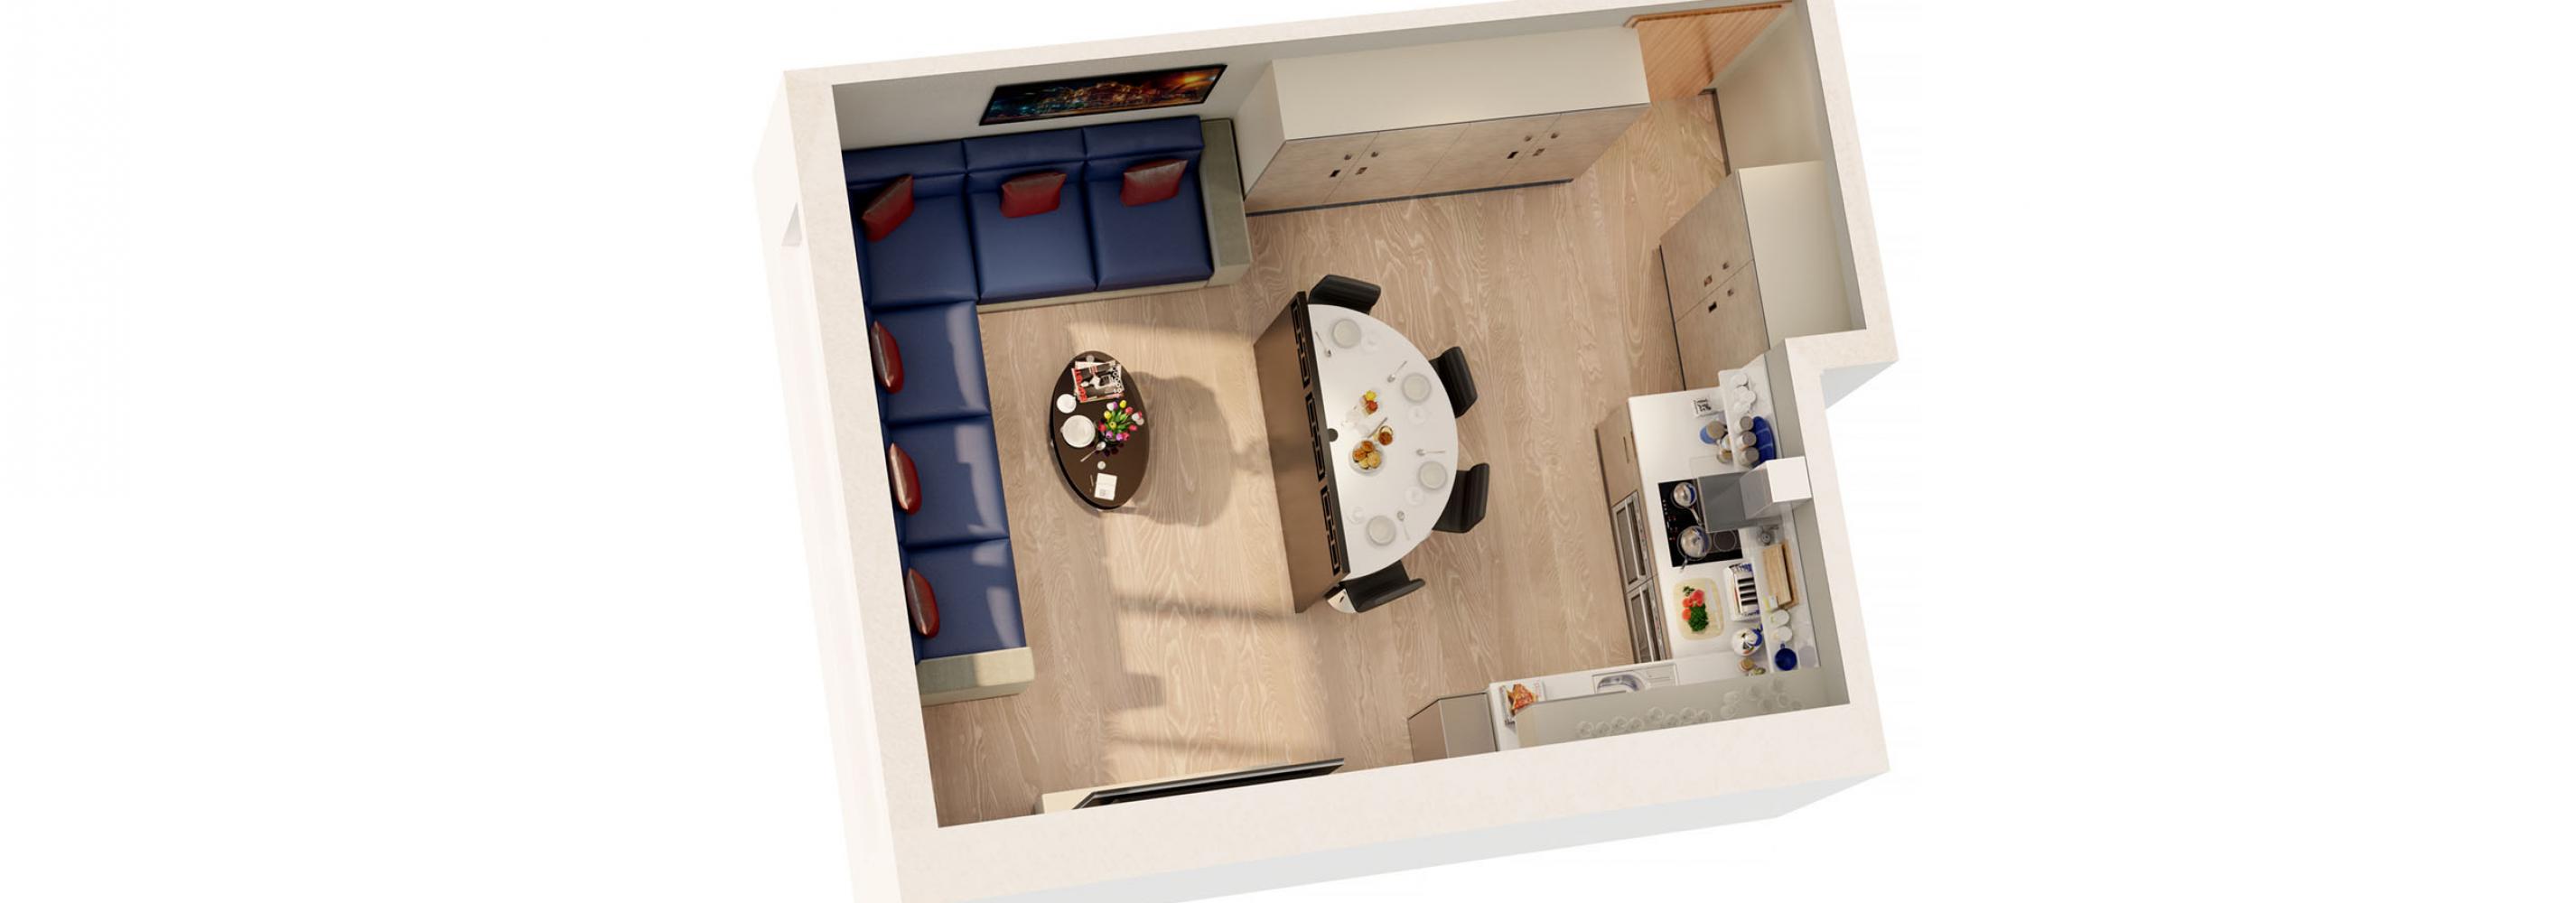 Shared kitchen/lounge area floorplan